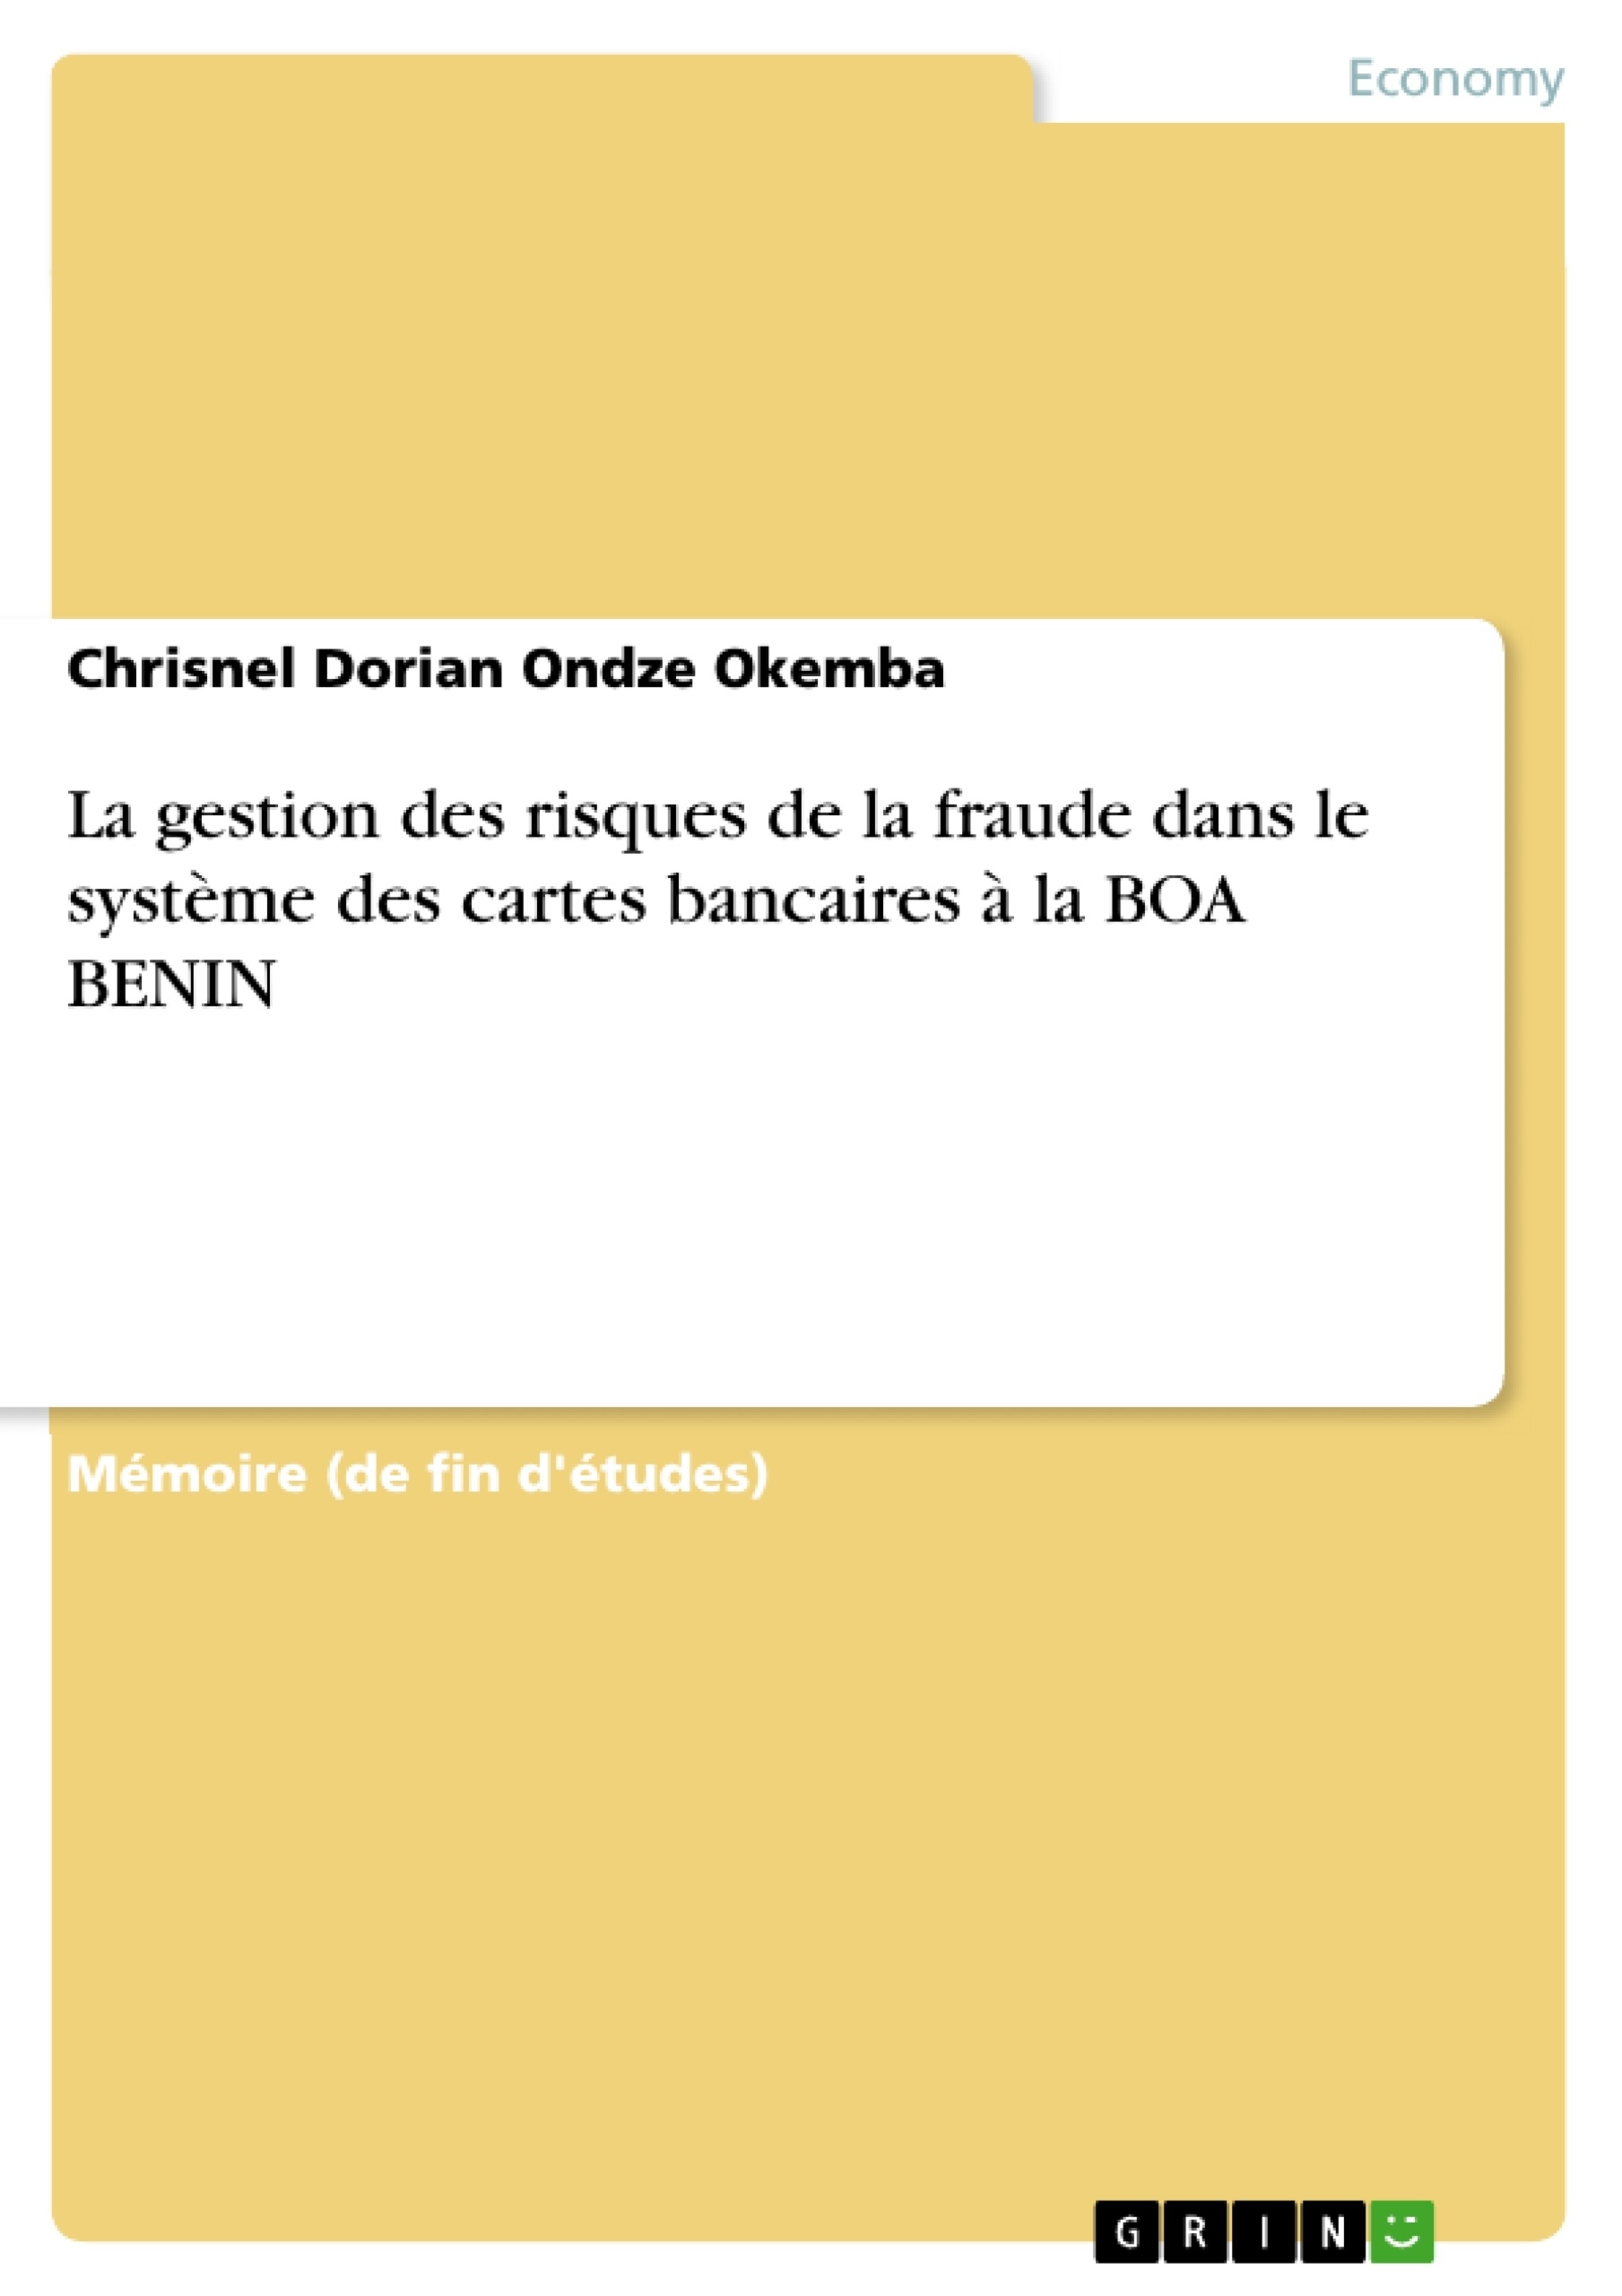 Titre: La gestion des risques de la fraude dans le système des cartes bancaires à la BOA BENIN